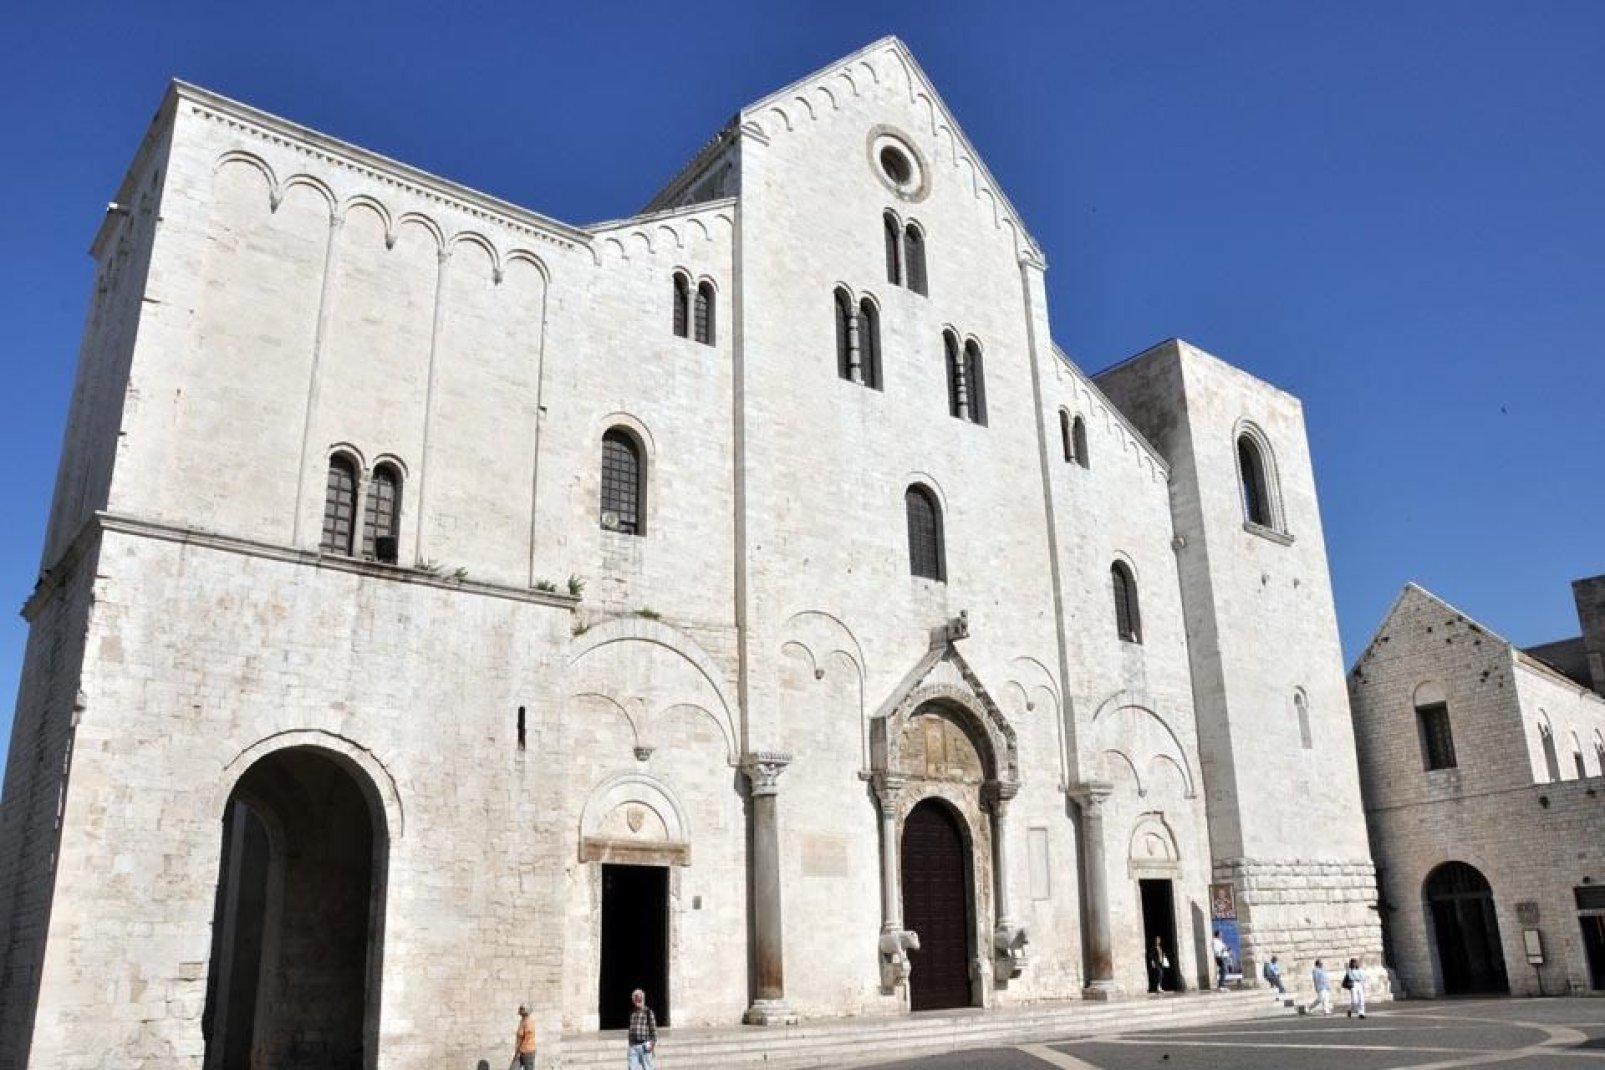 La Cattedrale di San Nicola, nel cuore della Bari vecchia, fu costruita in stile romanico tra il 1089 e il 1197 e accoglie le reliquie del Santo